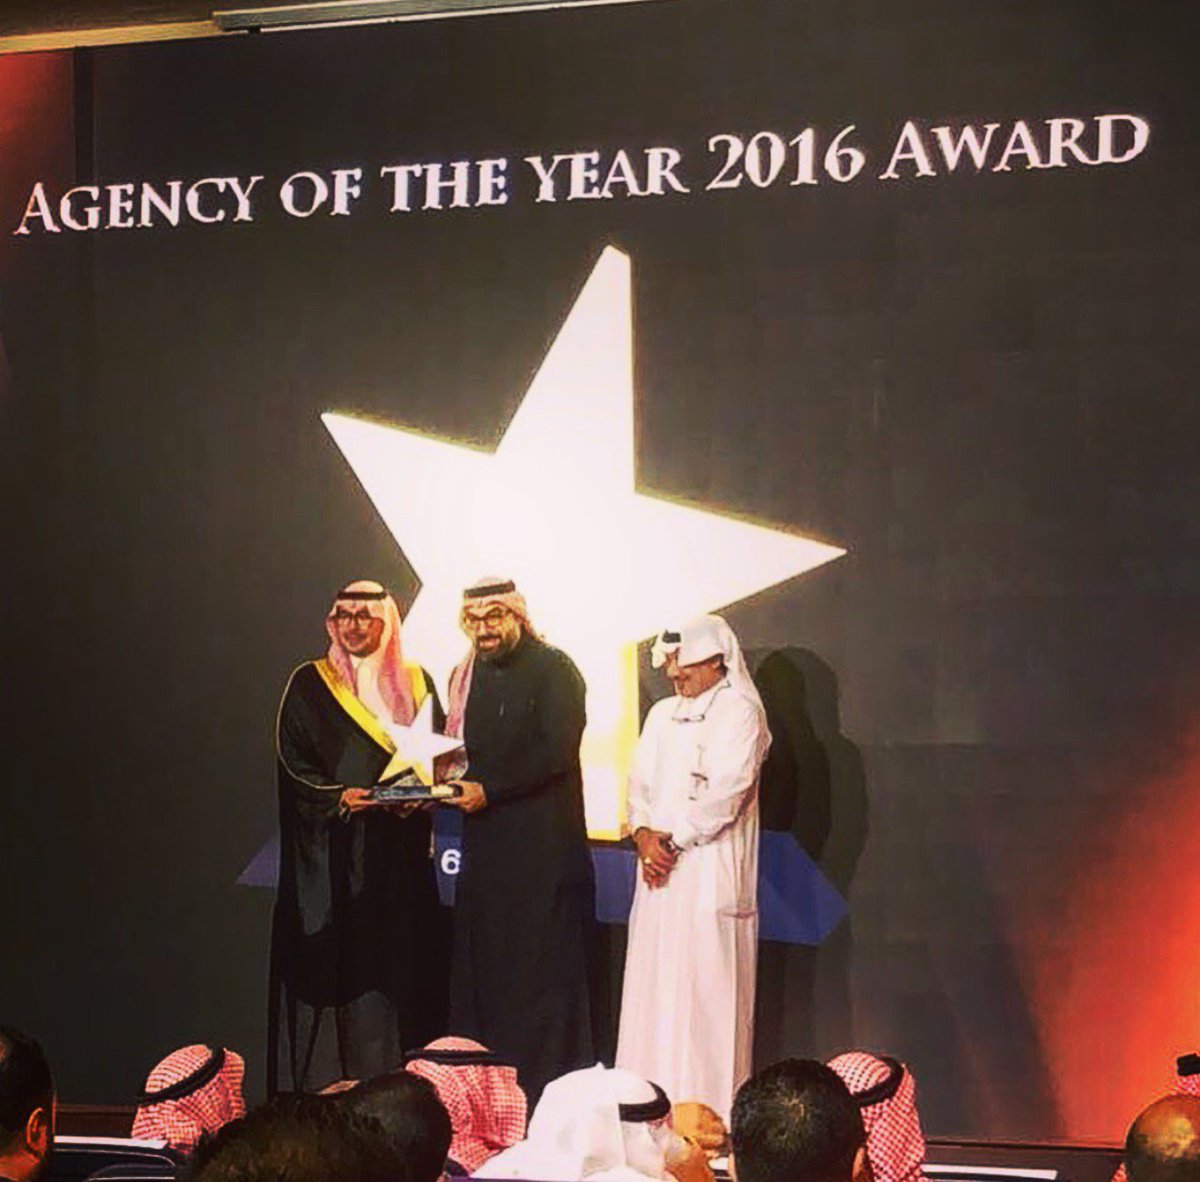 مبروك لشركة ليوبرنت السعودية حصولها على لقب أفضل وكالة إعلانية بالمملكة لعام ٢٠١٦، وذلك بعد حصدها لأكبر عدد من الجوائز في حفل عكاظ السنوي للإبداع الإعلاني Congratulations Leo Burnett KSA for being awarded agency of the year 2016